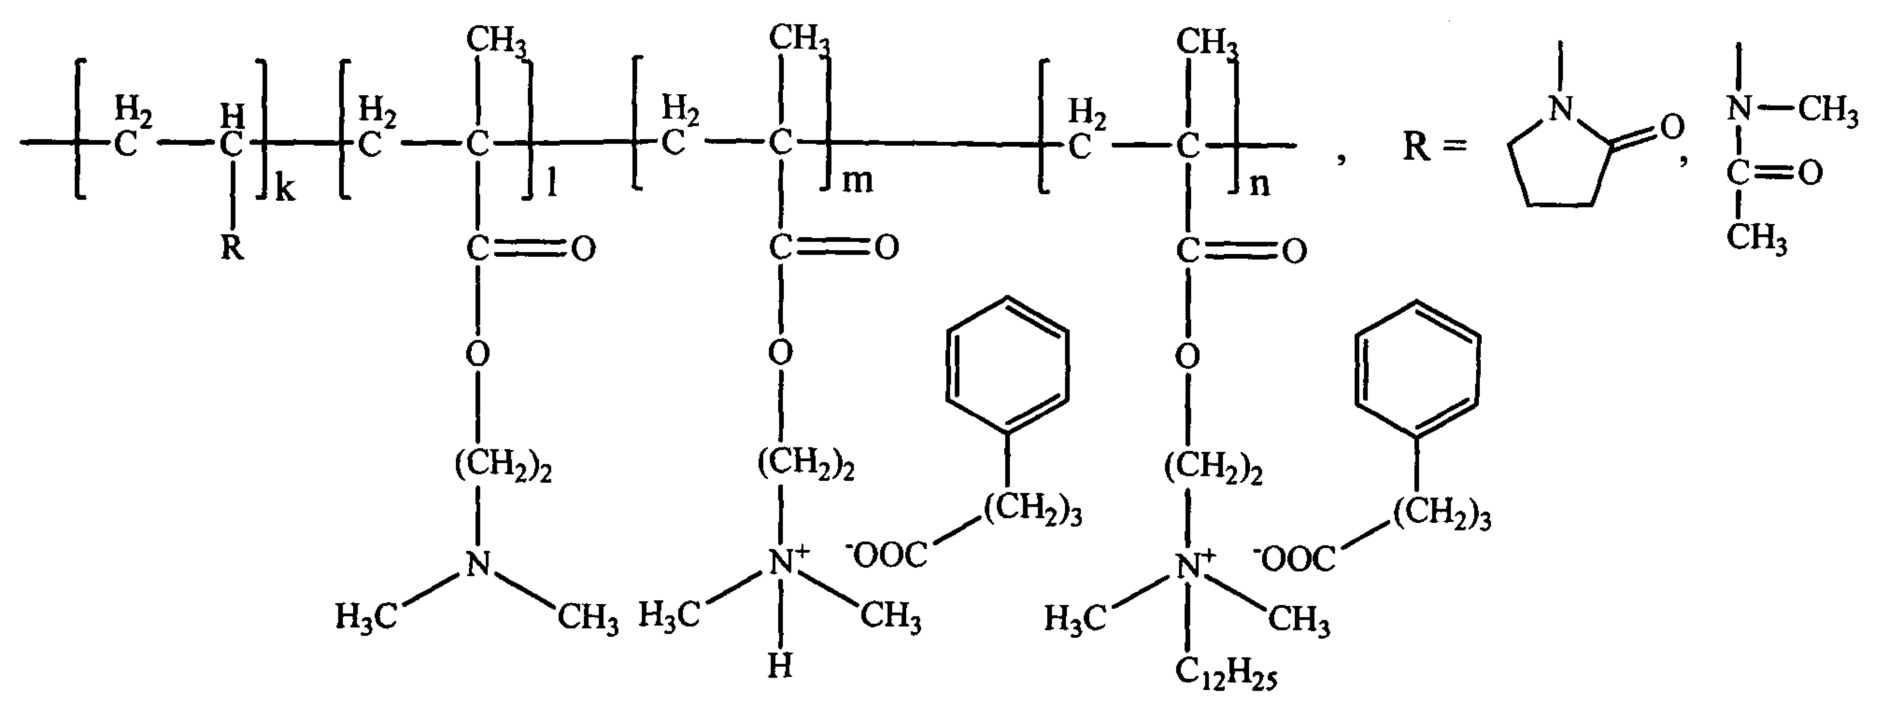 Полимерные водорастворимые производные 4-фенил-бутановой кислоты, обладающие противоопухолевой активностью